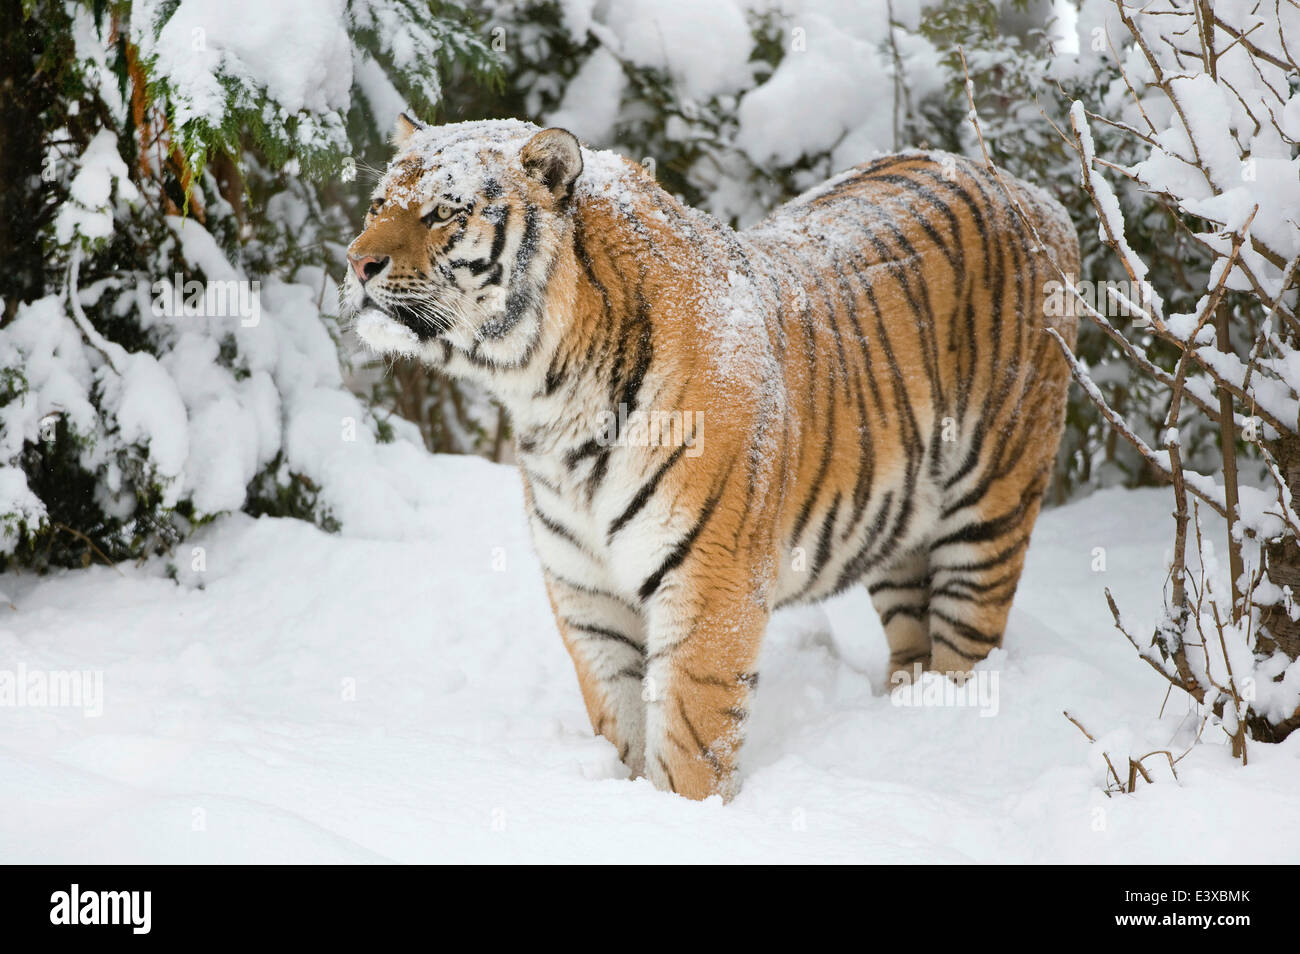 Tigre de Sibérie ou tigre de l'amour (Panthera tigris altaica), debout dans la neige, captive, Saxe, Allemagne Banque D'Images